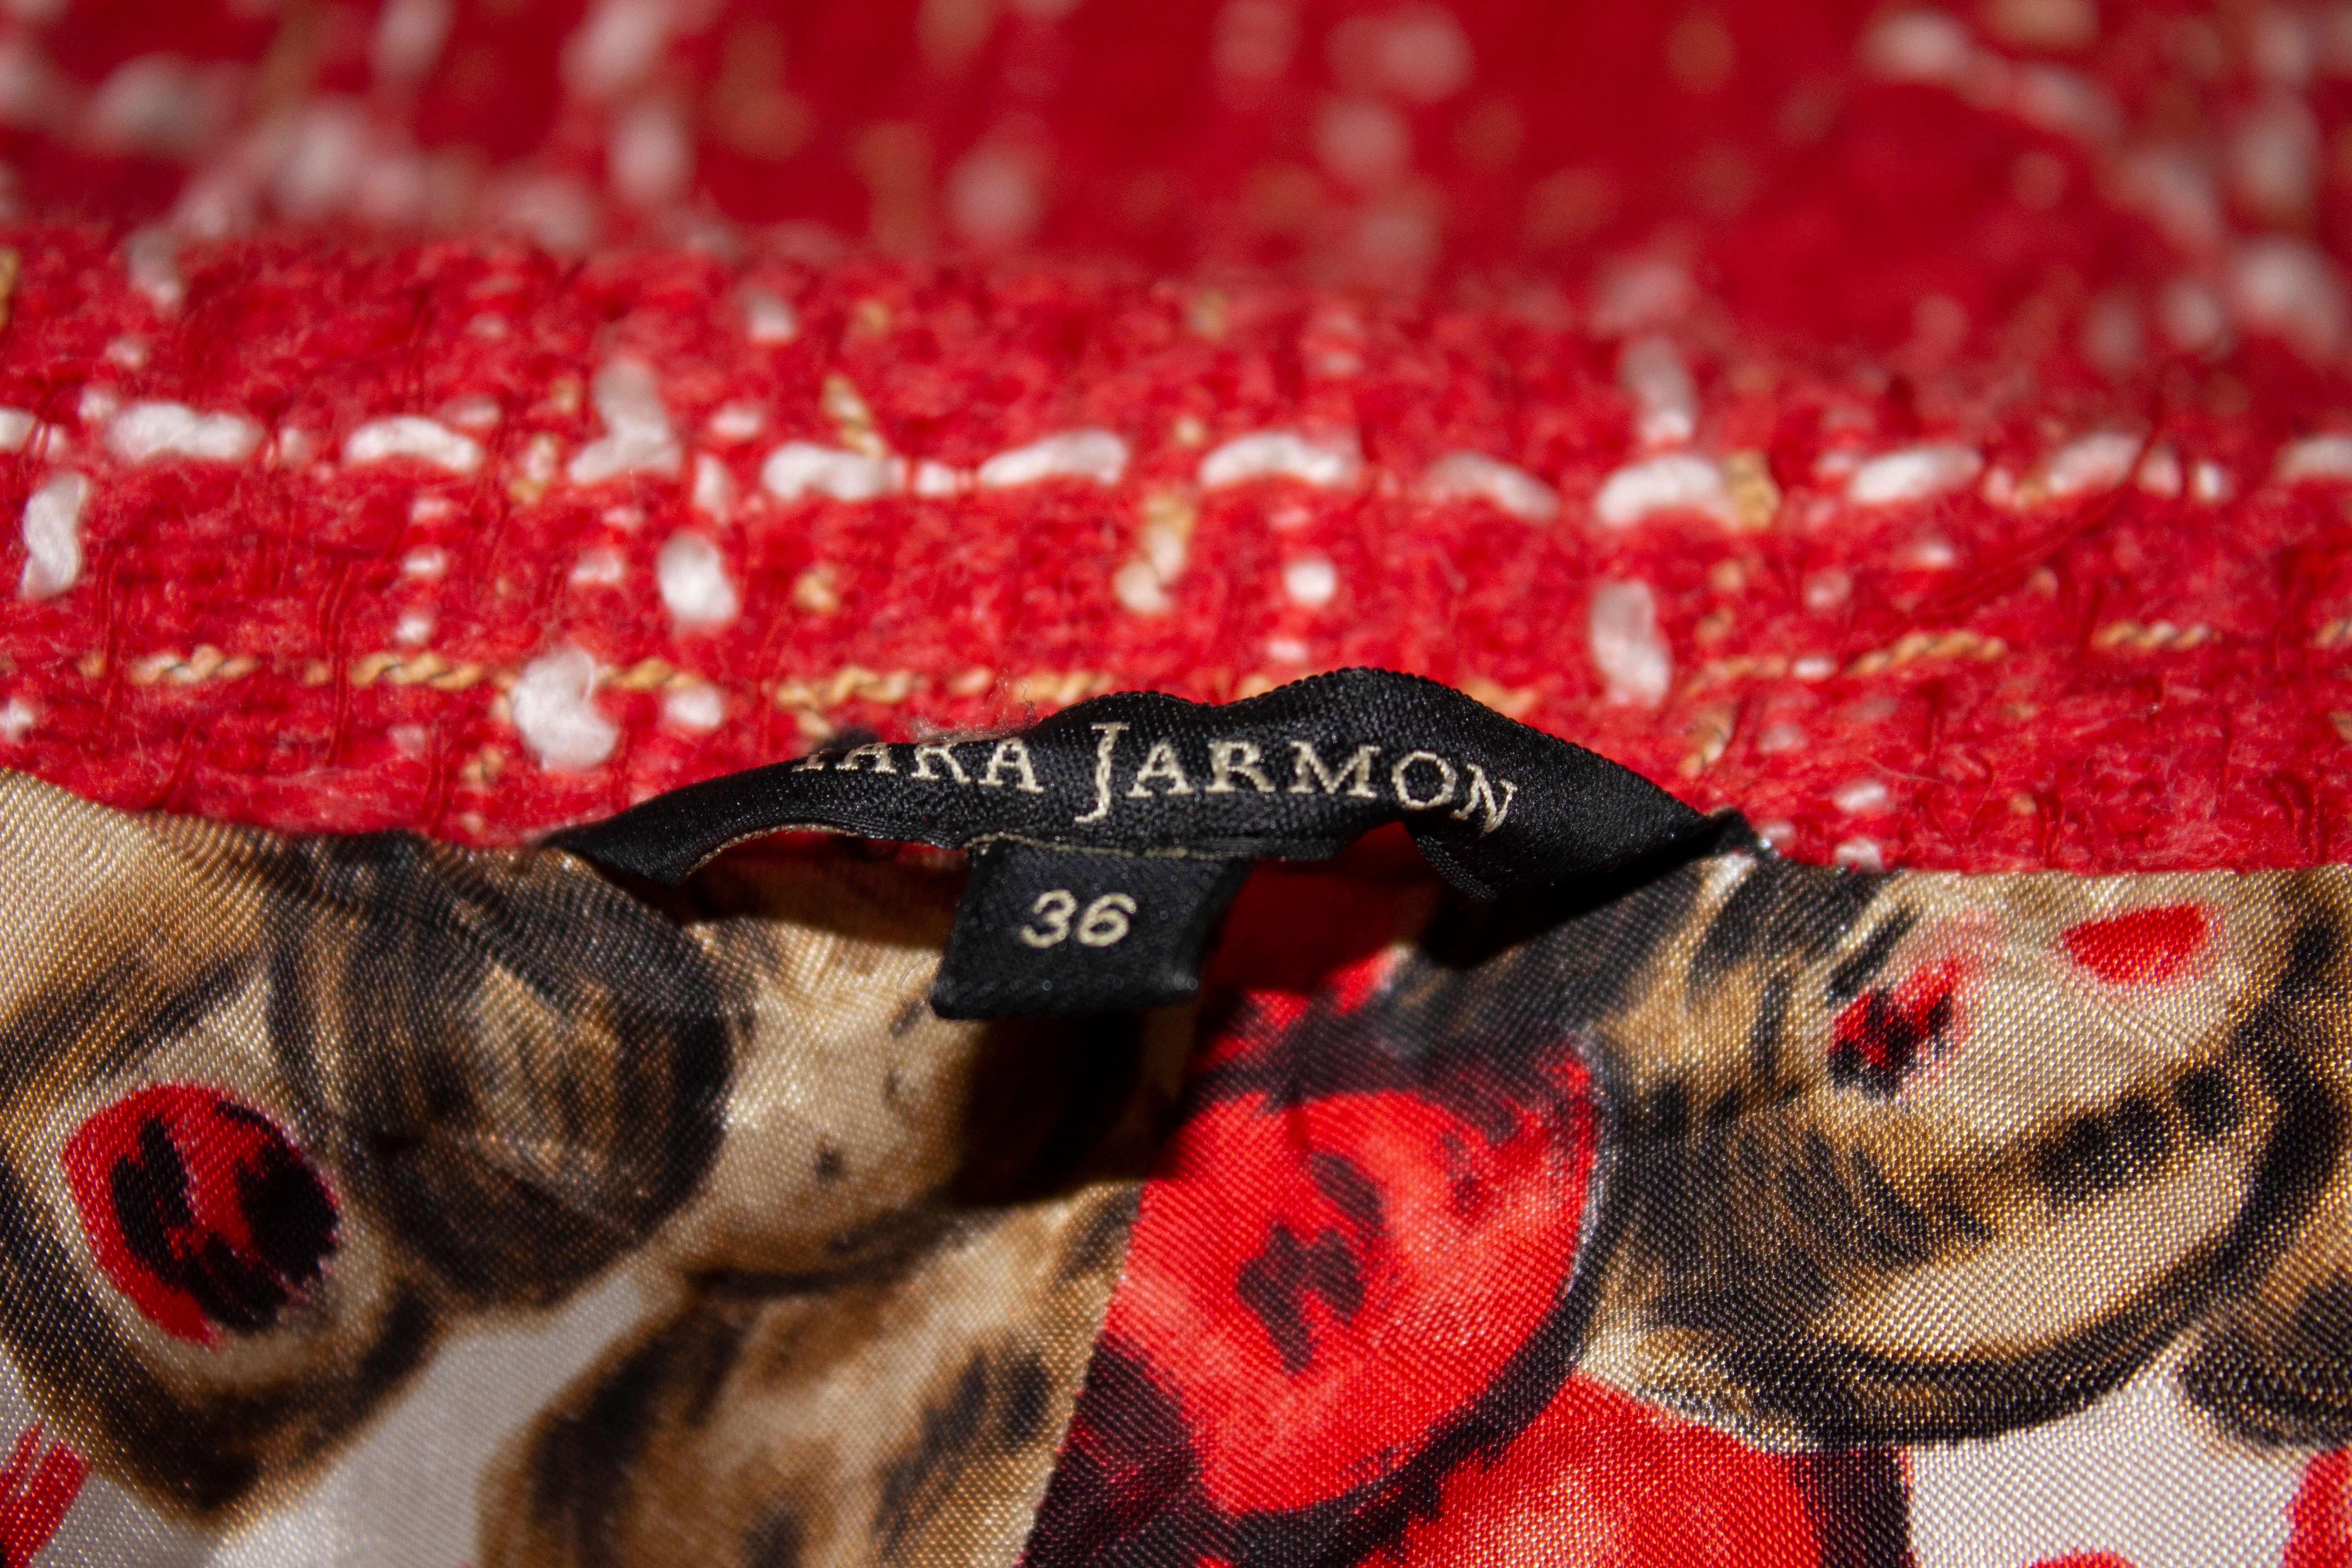 Un manteau amusant de Tara Jamon. Le manteau est en tissu rouge et blanc avec une magnifique doublure. Elle s'ouvre sur le devant par quatre boutons, possède un col rond et une demi ceinture dans le dos. 
Mesures : Poitrine 34/5'', longueur 40''